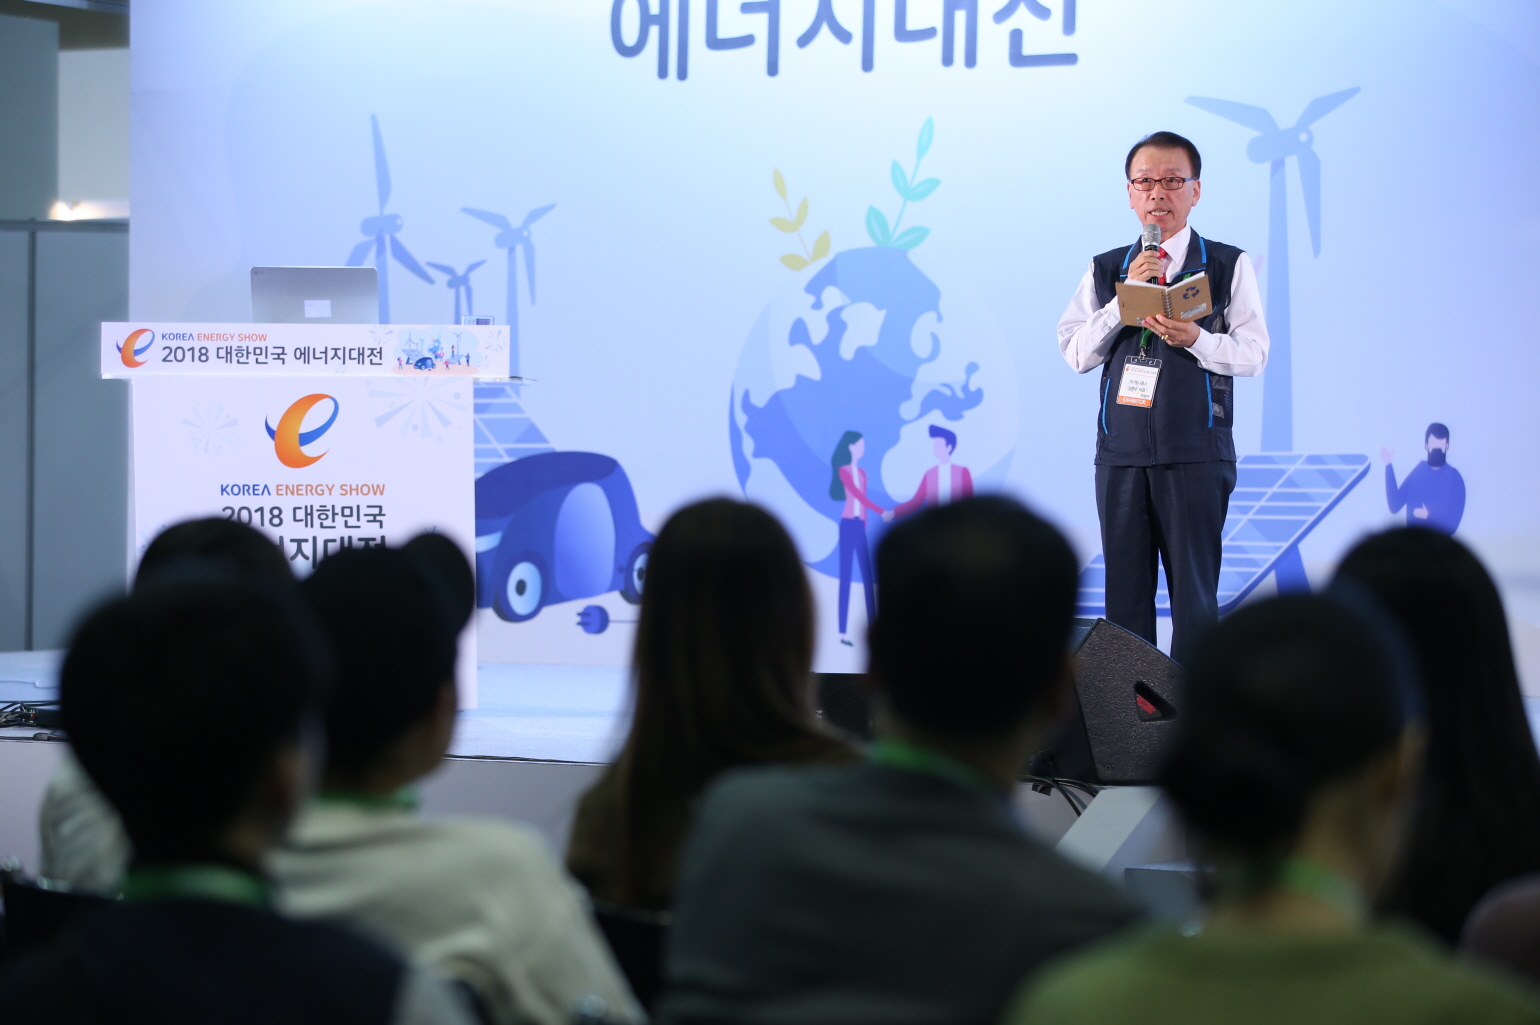 2018 대한민국 에너지대전 일자리 토크 콘서트